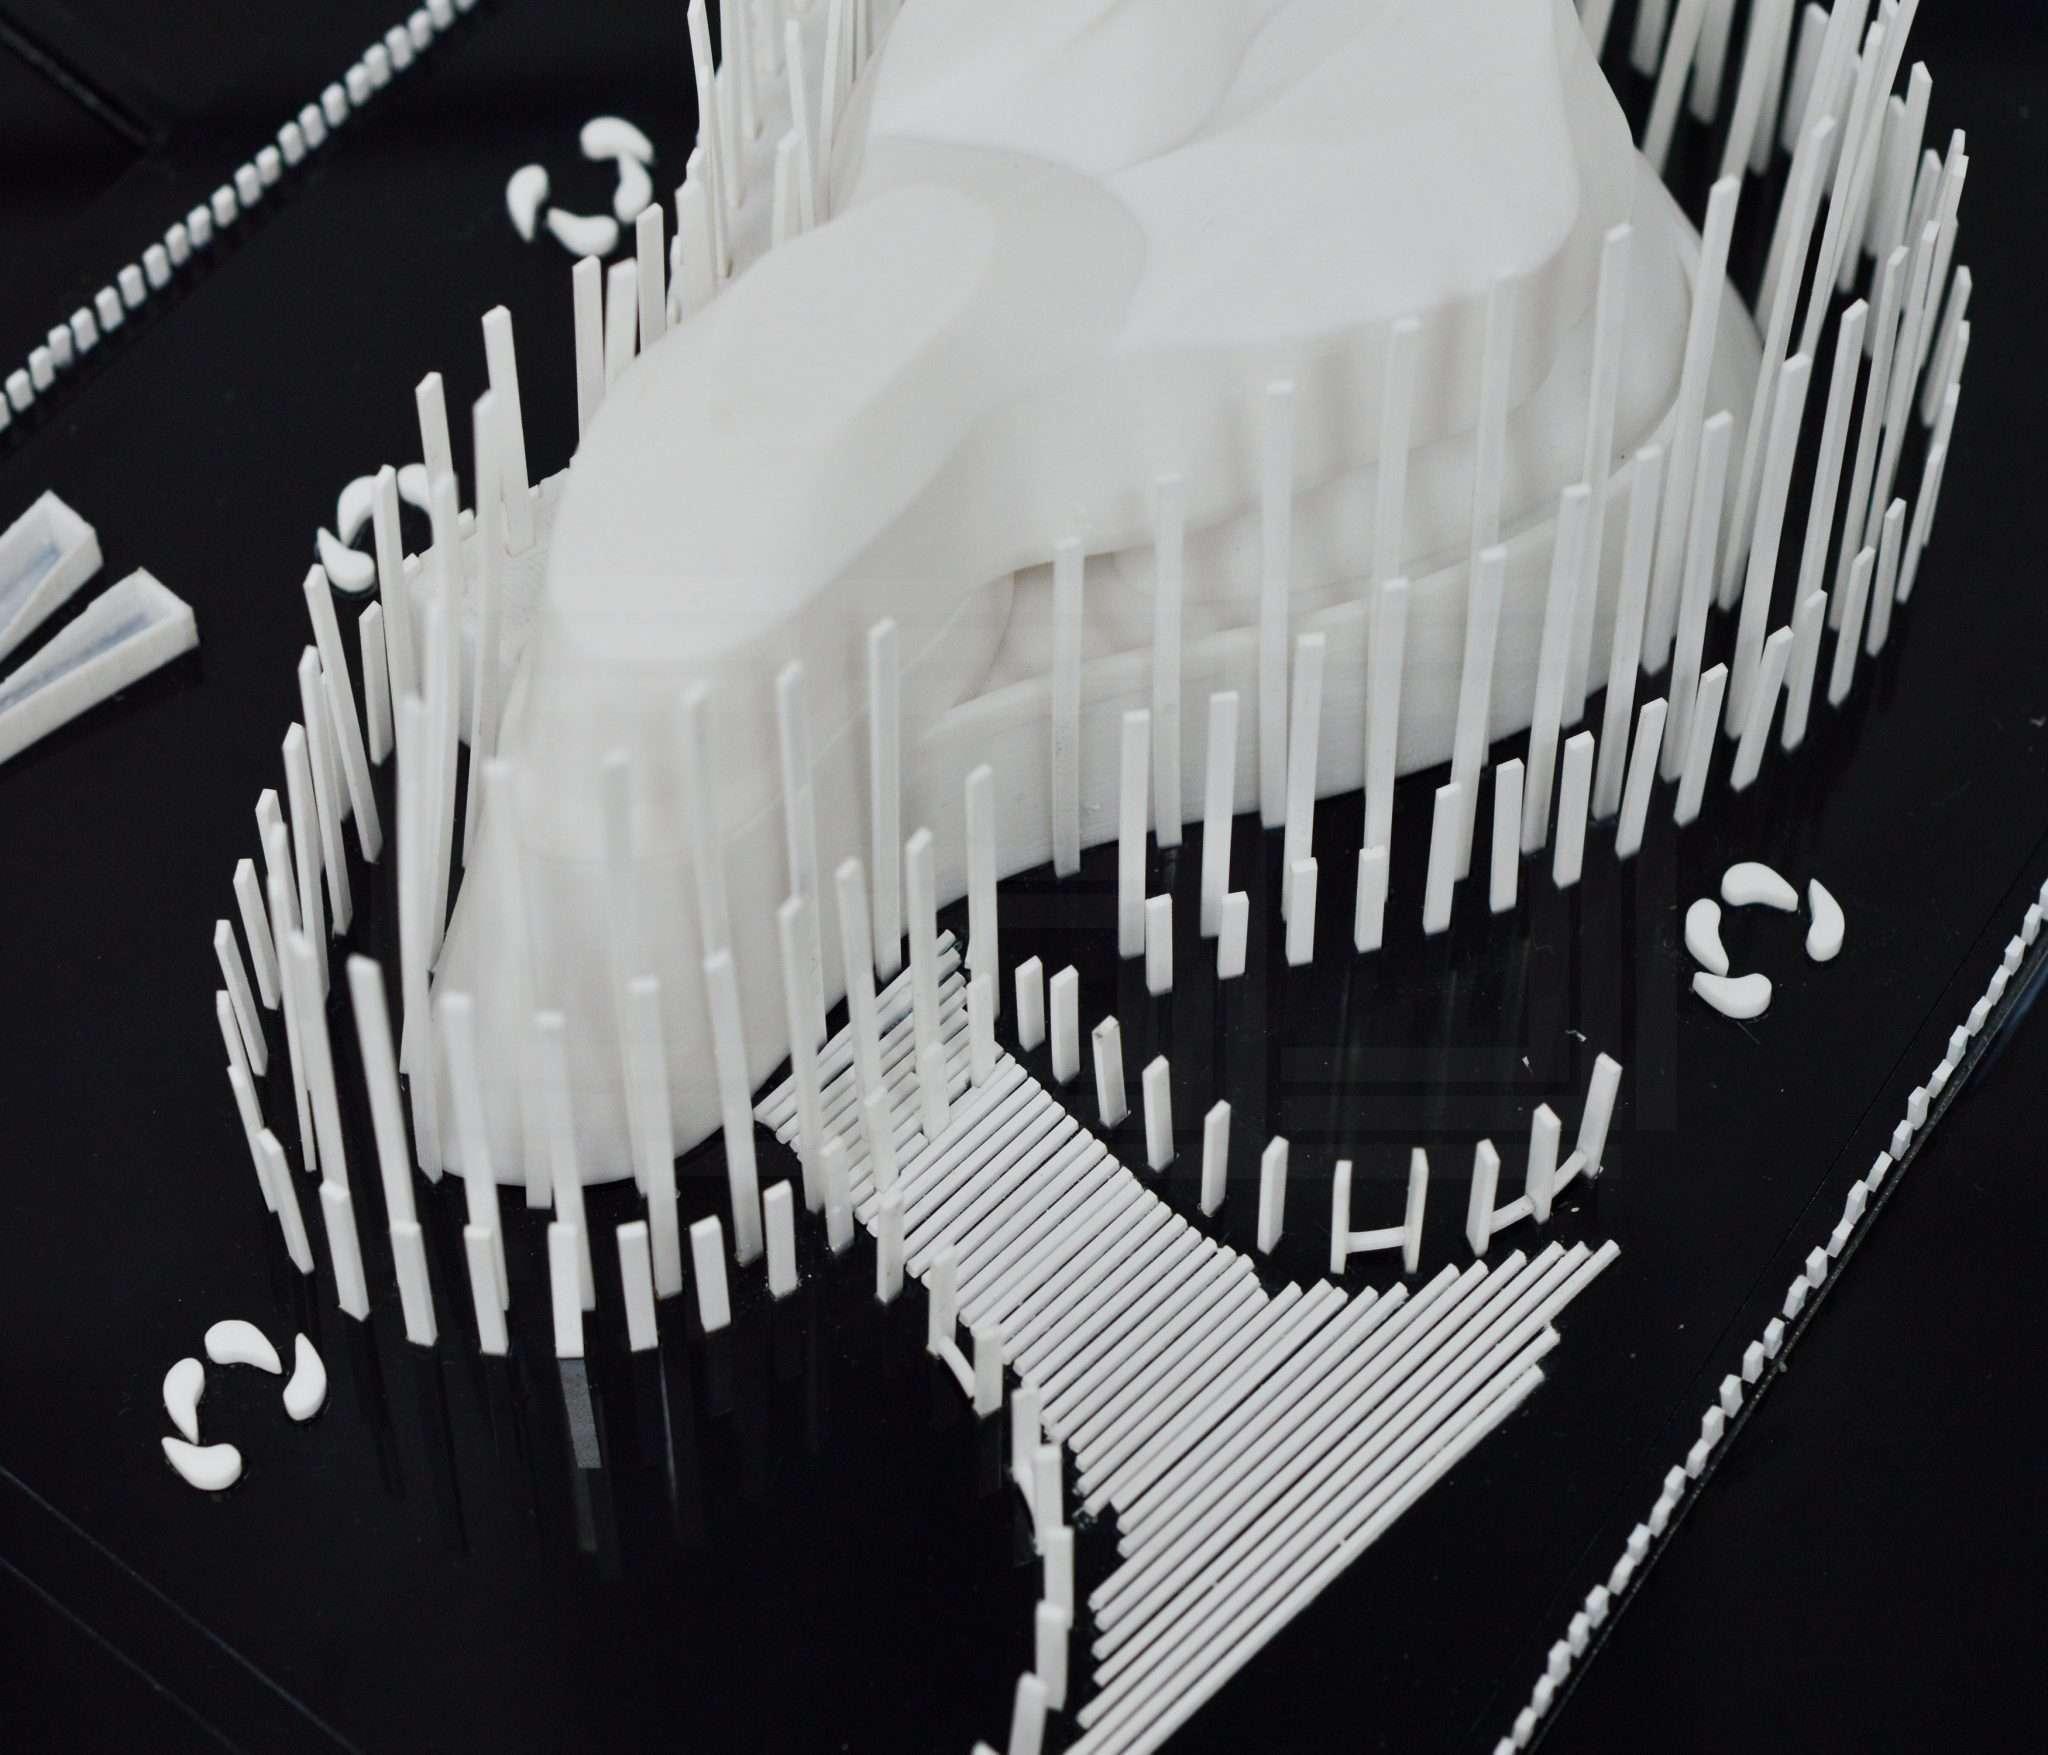 Product Professional 3D Designing Services | Dubai, UAE - C3D Printing image